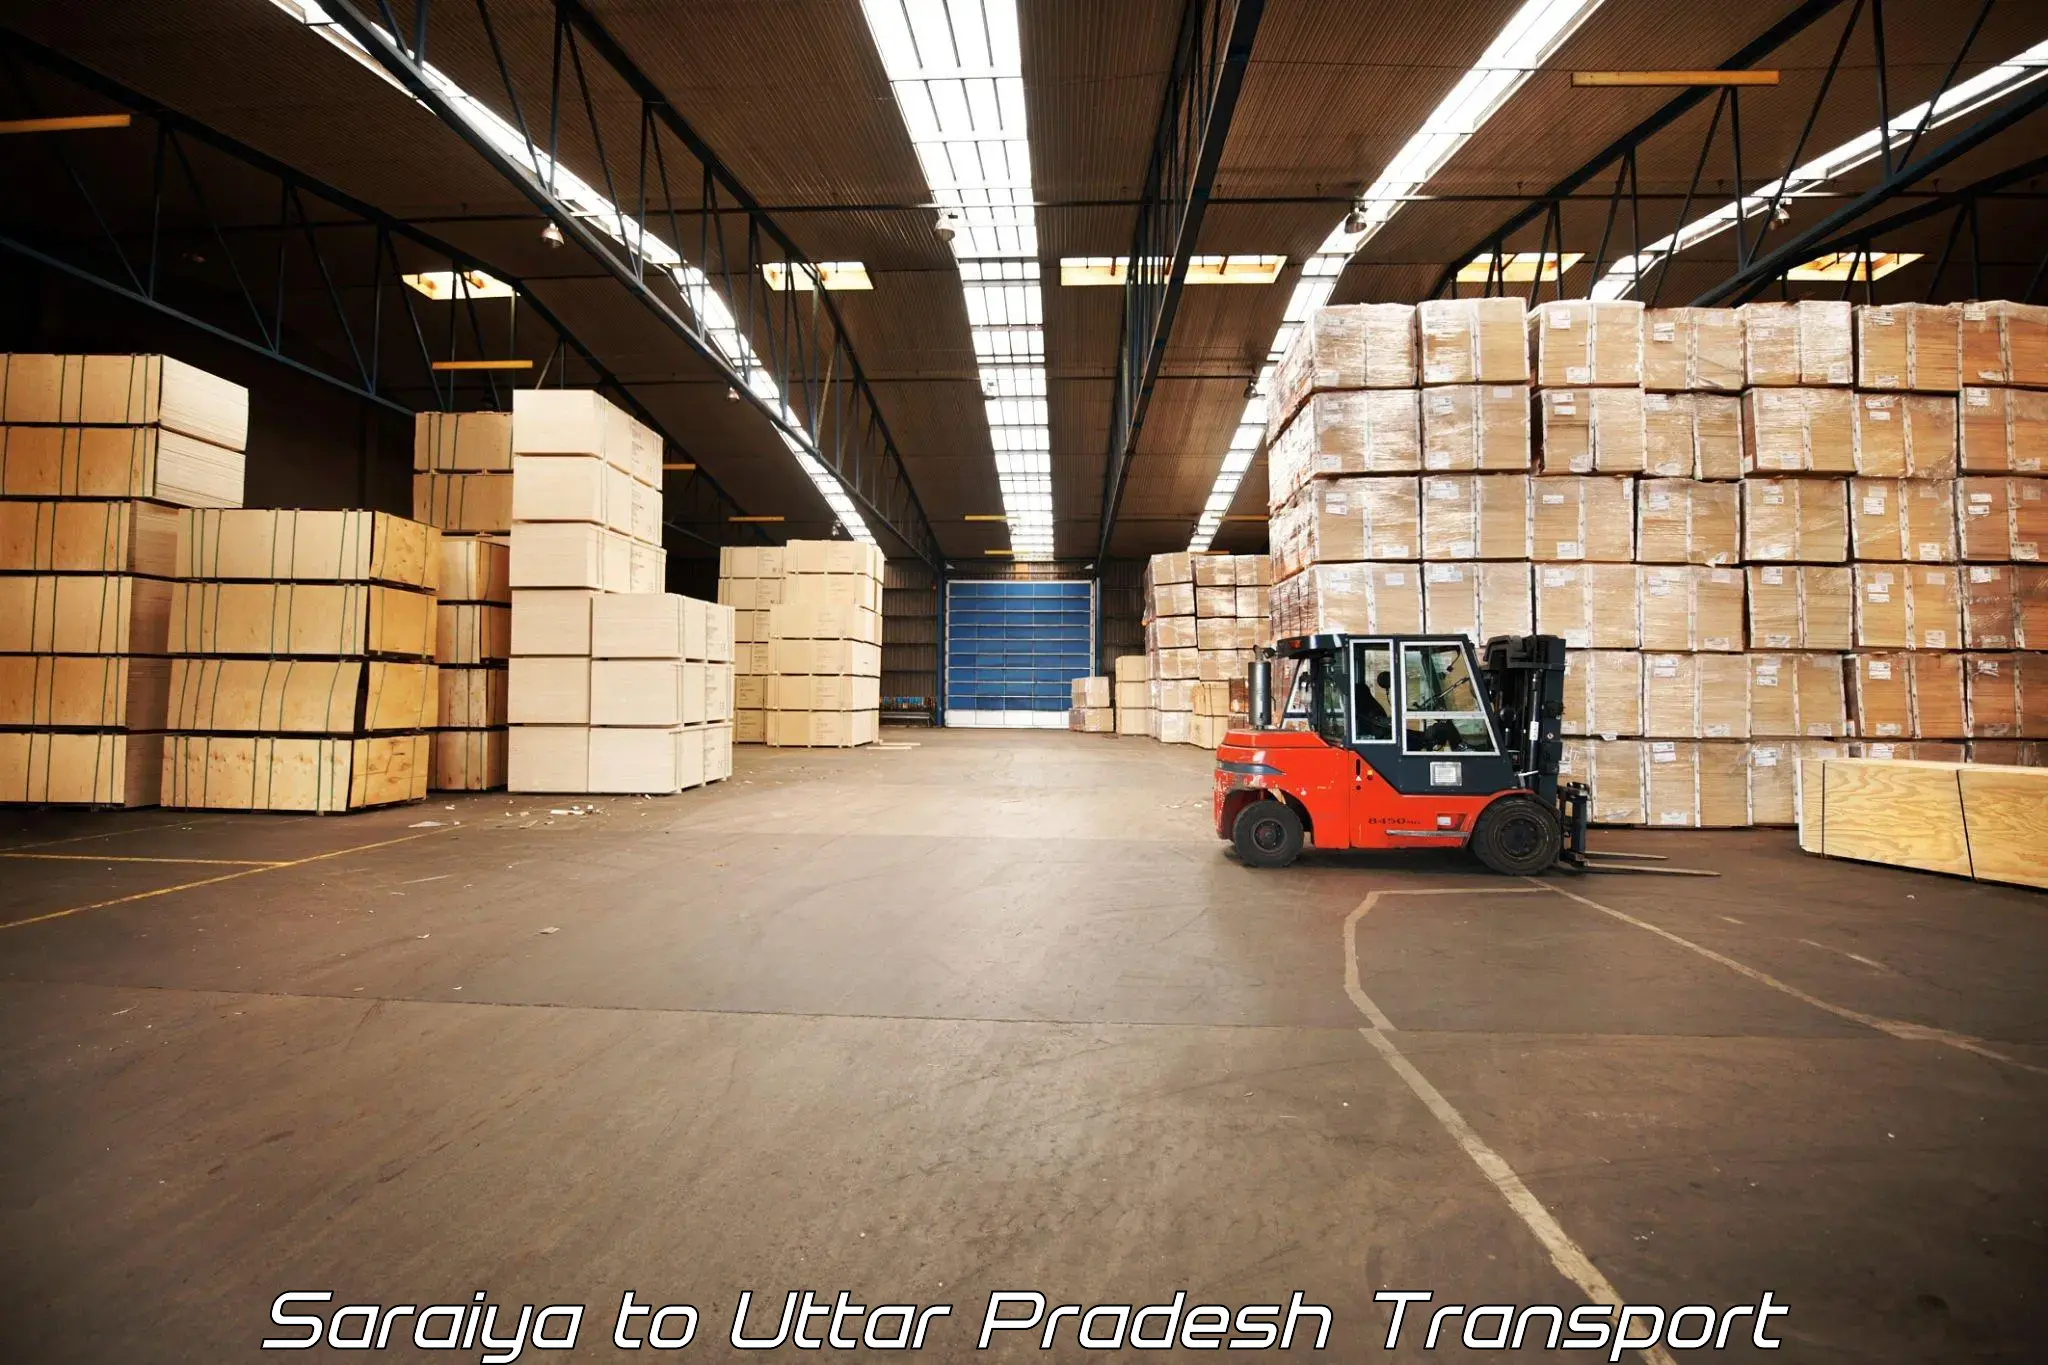 Daily parcel service transport Saraiya to Uttar Pradesh